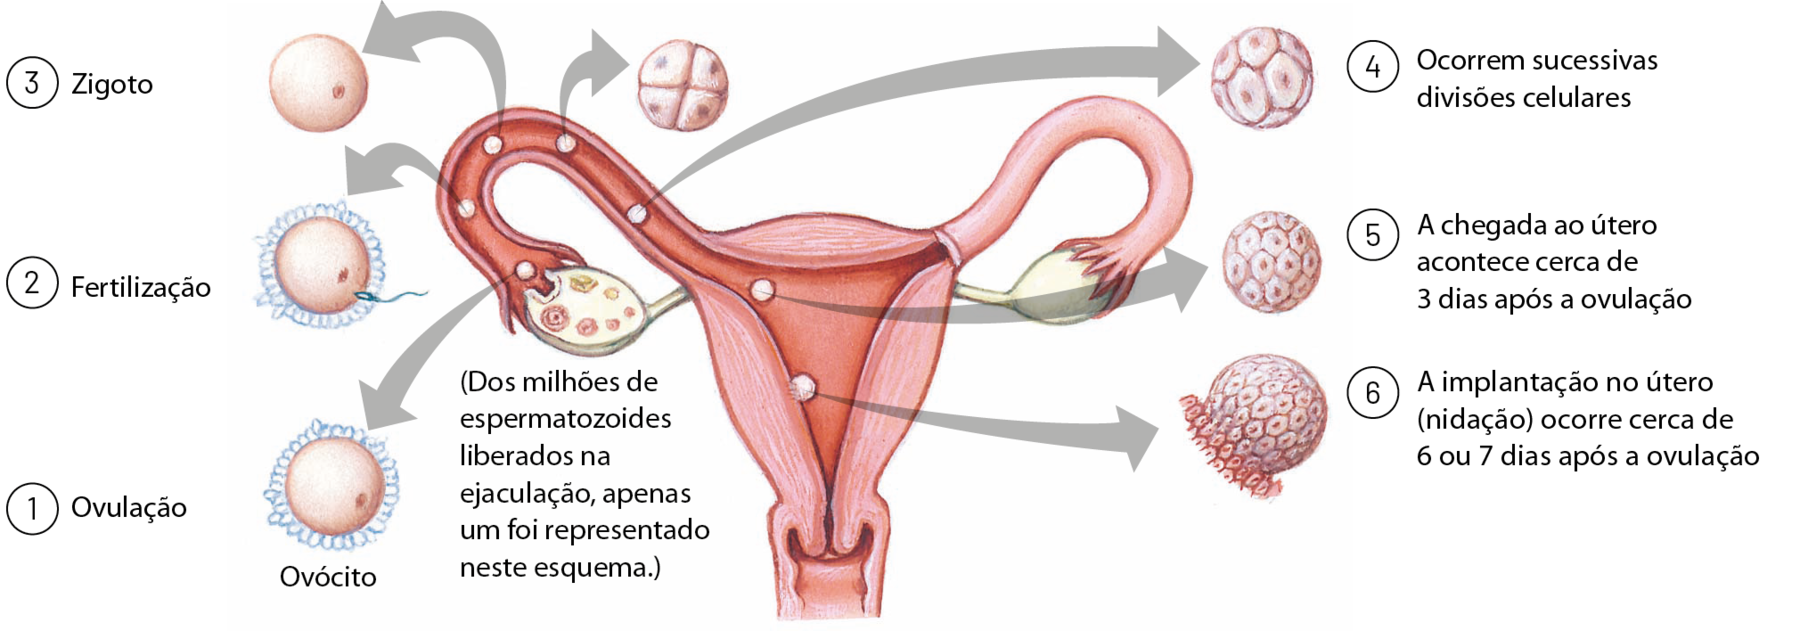 Esquema. Parte do sistema genital feminino. Ao redor, setas com as indicações das etapas da fertilização. (Dos milhões de espermatozoides liberados na ejaculação, apenas um foi representado neste esquema.) 1: Ovulação (do ovário para a extremidade da tuba uterina). 2: Fertilização (no interior da tuba uterina). 3: Zigoto (no interior da tuba uterina). 4: Ocorrem sucessivas divisões celulares (no interior da tuba uterina). 5: A chegada ao útero acontece cerca de 3 dias após a ovulação (na parte superior do útero). 6: a implantação no útero (nidação) ocorre cerca de 6 ou 7 dias após a ovulação (na parede uterina).